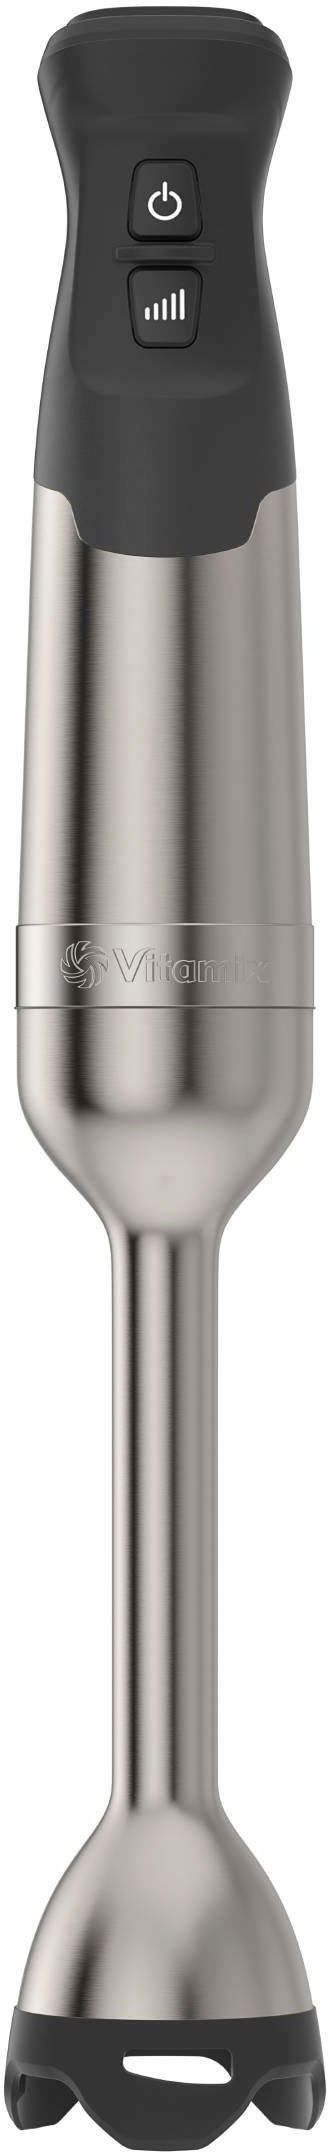 Vitamix Immersion Blender Stainless Steel 067991 - Best Buy